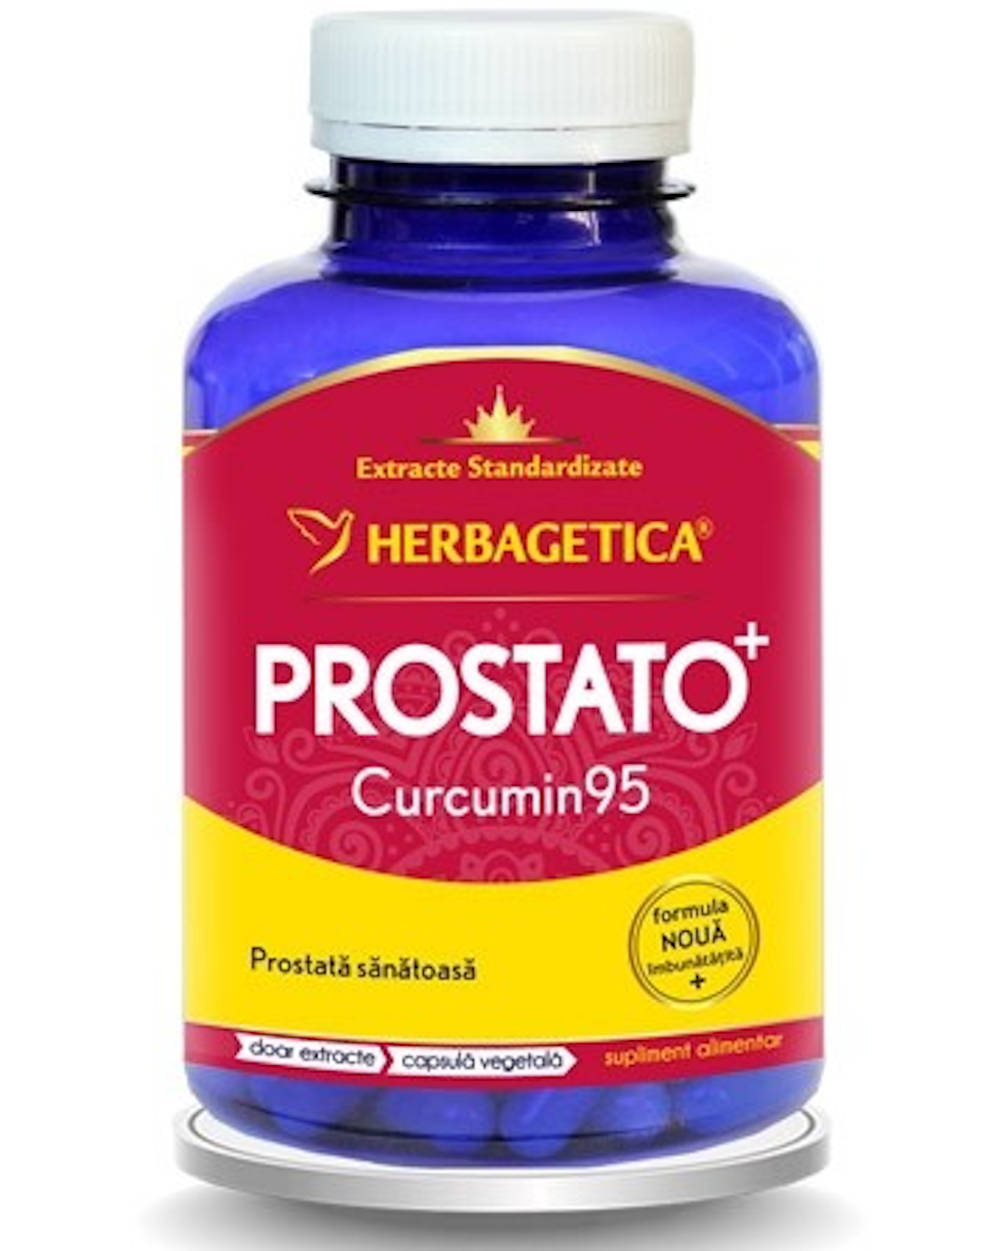 prostato curcumin 95 forum)